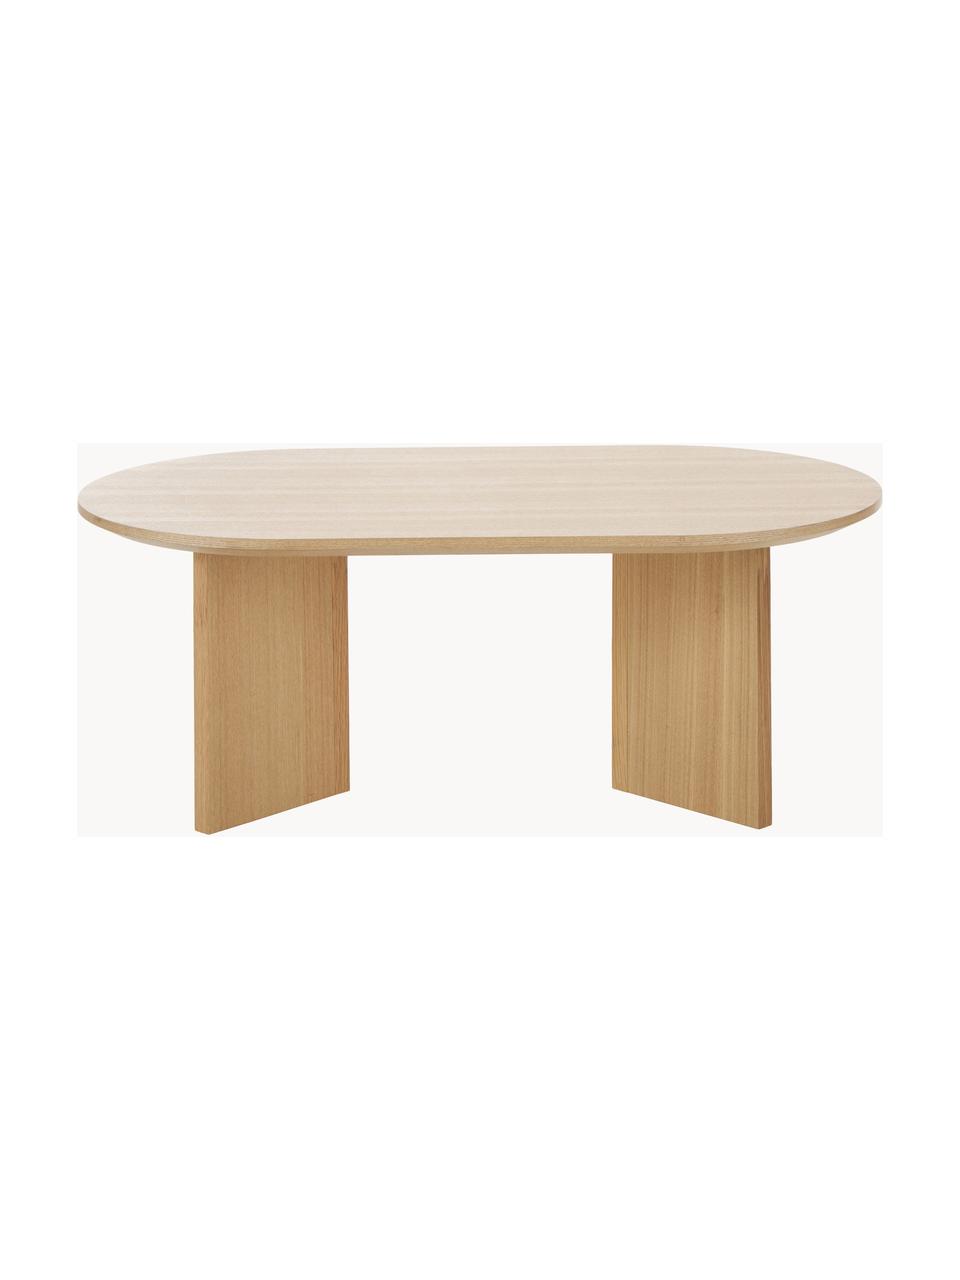 Tavolino ovale in legno Toni, Pannello di fibra a media densità (MDF) con finitura in frassino, verniciato, Legno di frassino, Larg. 100 x Prof. 35 cm